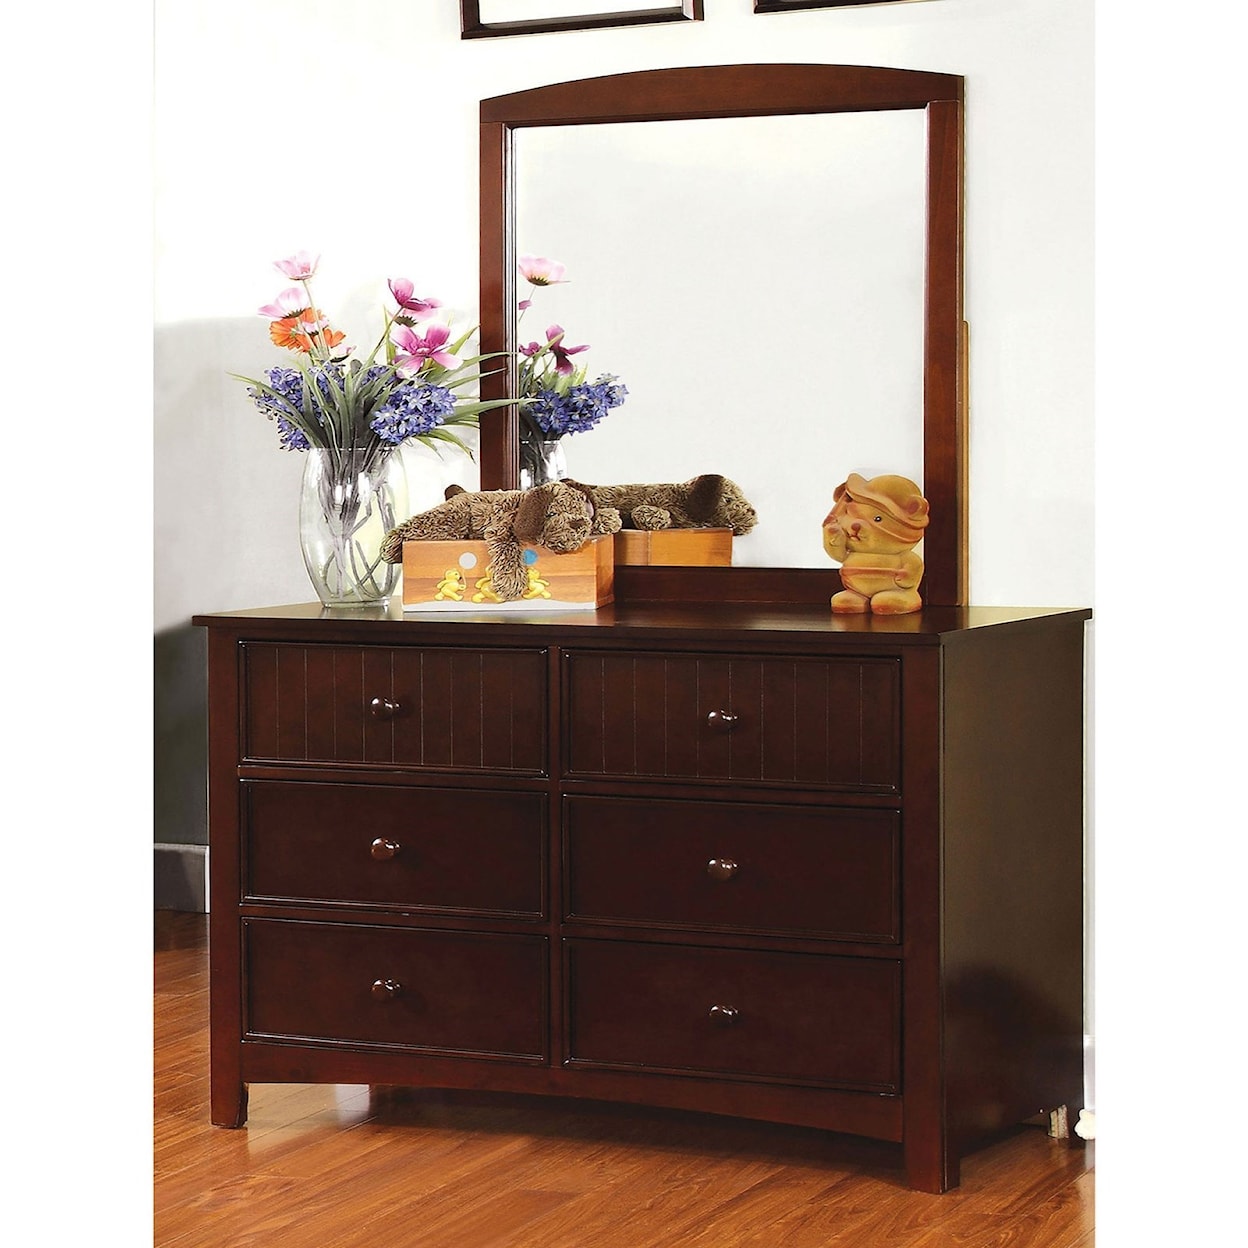 Furniture of America Omnus Dresser